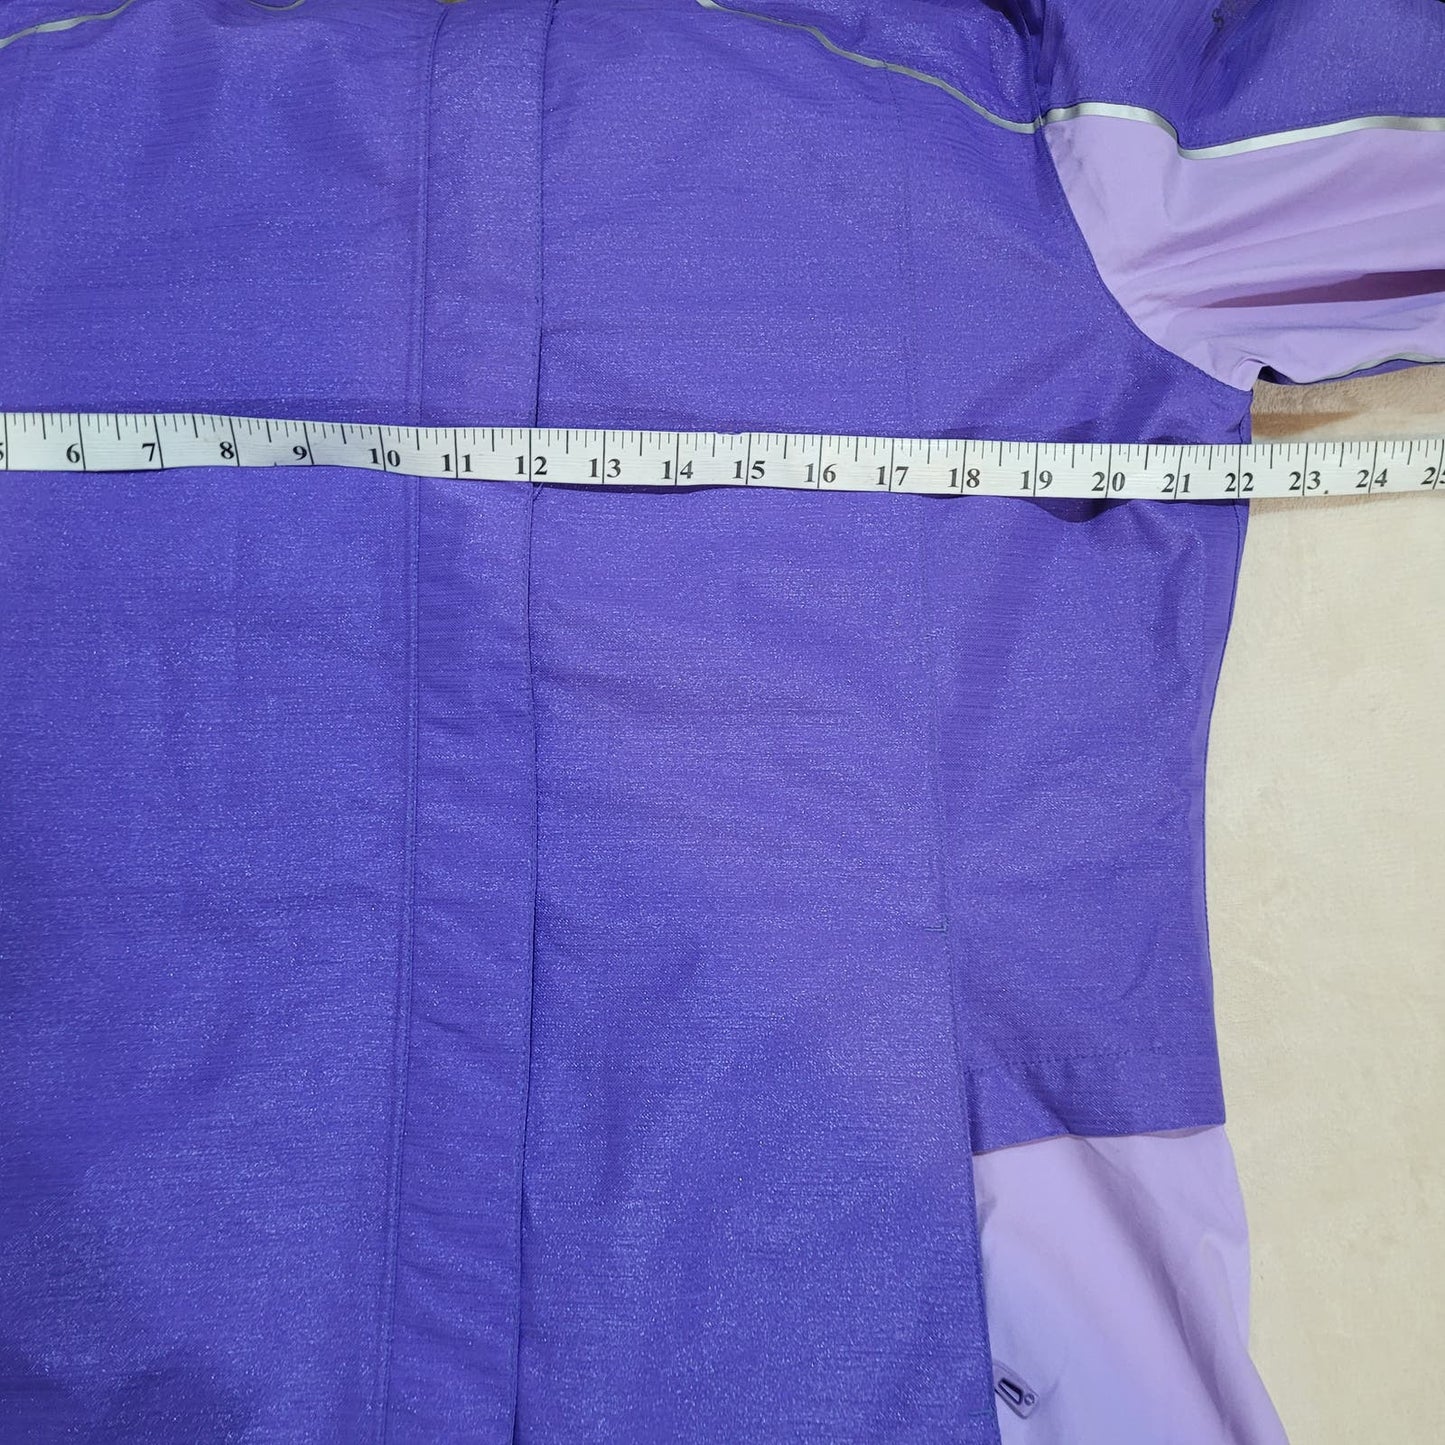 Sunice Elan Zephal Jacket Purple Large Waterproof Breathable - Size Extra Large